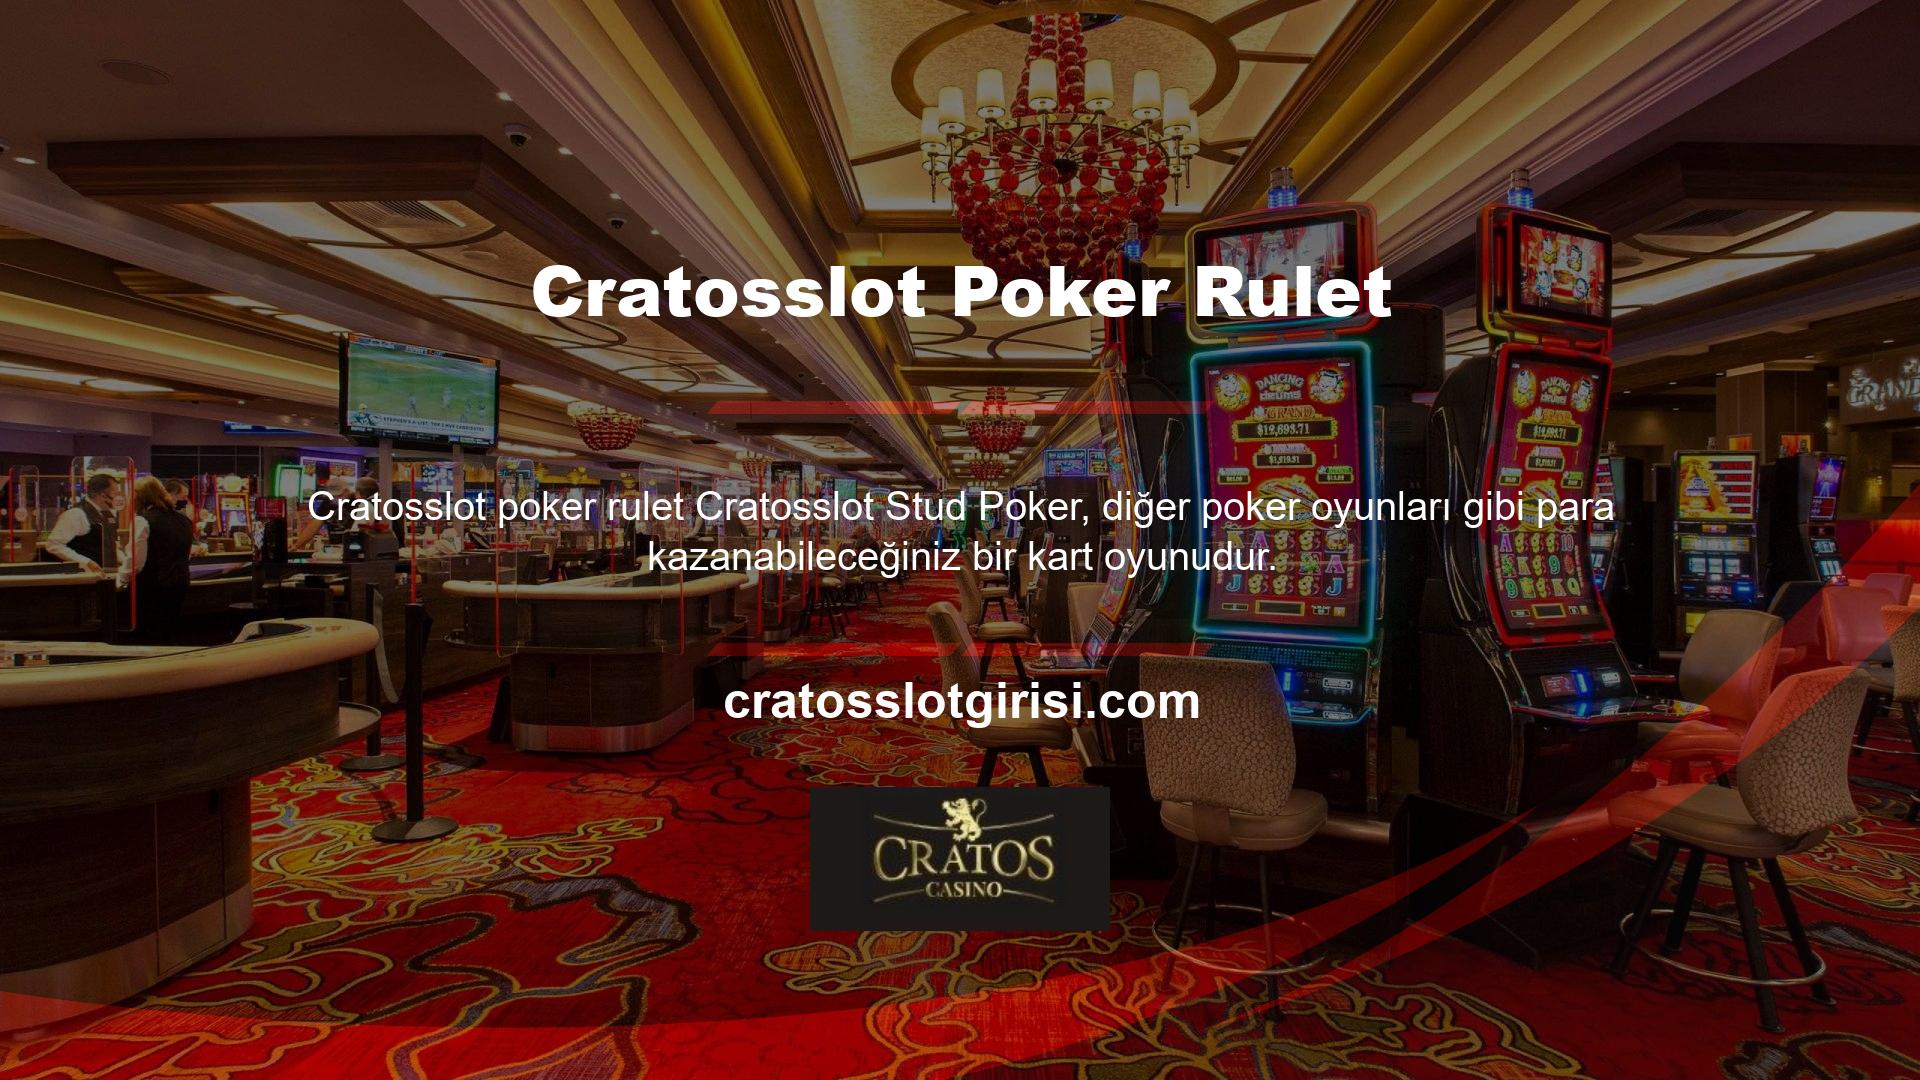 İyi eğitimli profesyonel Cratosslot poker rulet oyuncuları stud poker ile başlar